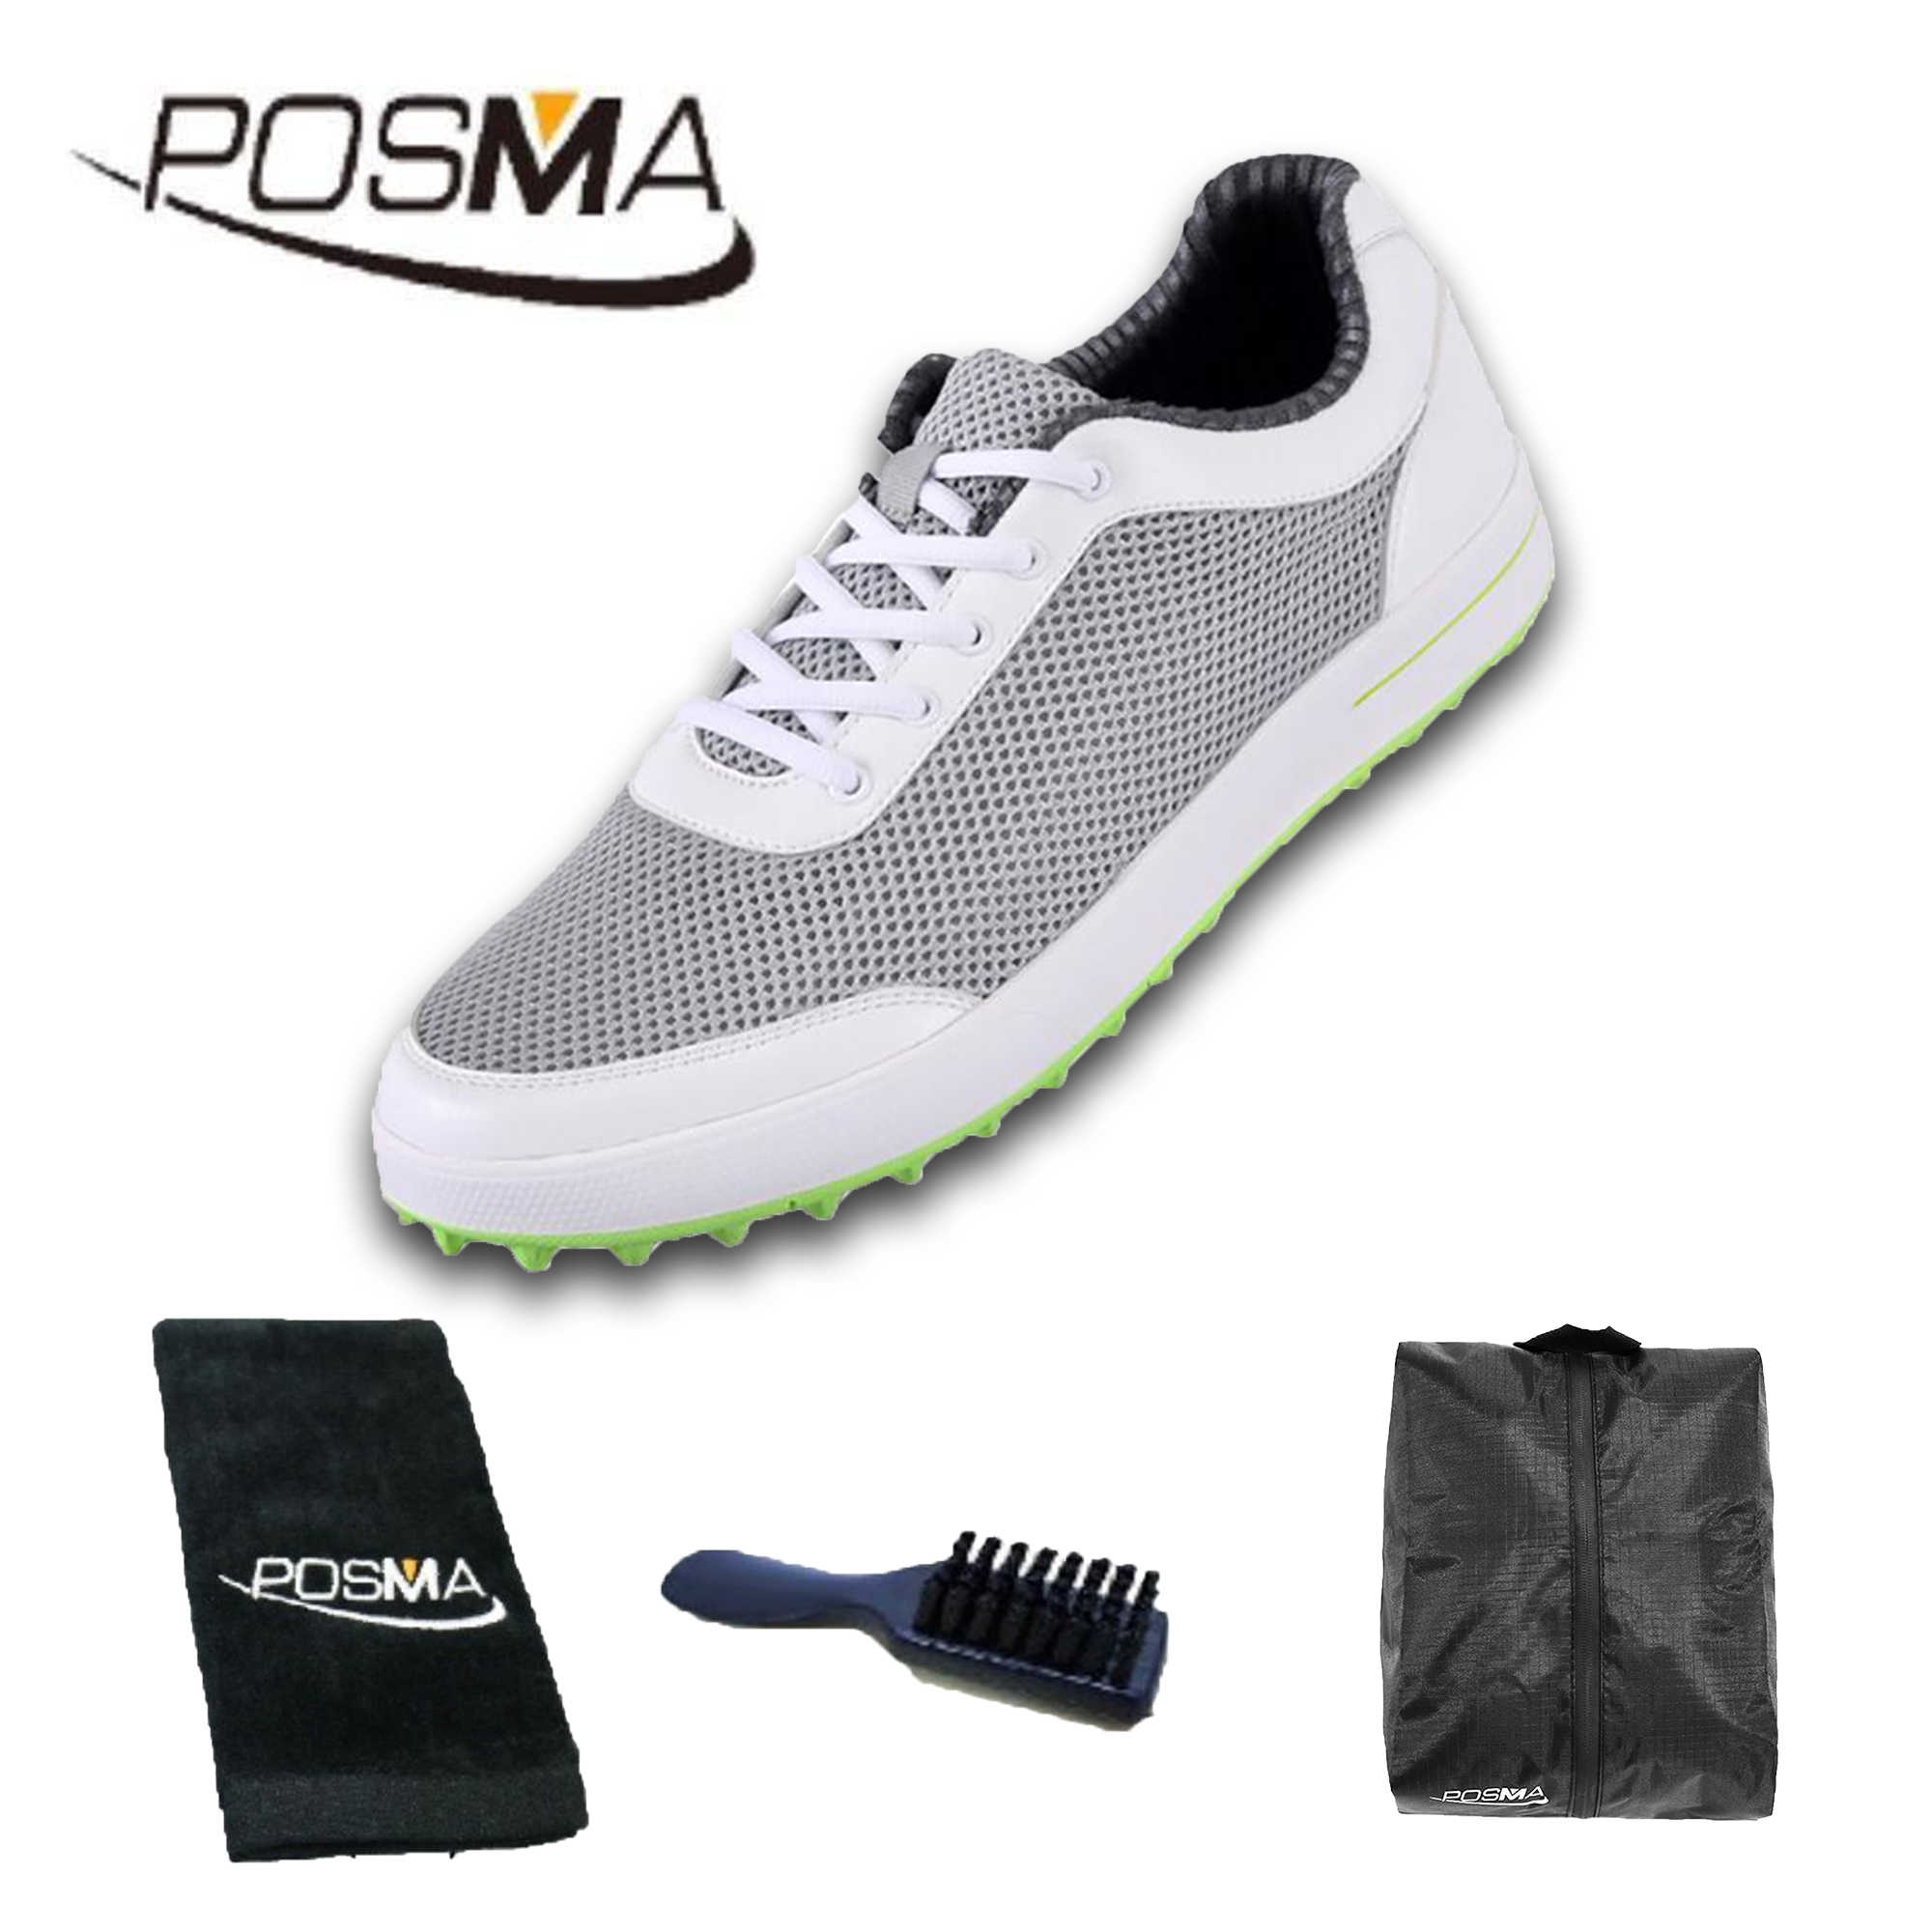 高爾夫男士球鞋 夏季網布球鞋 輕便 透氣舒適 GSH079L 灰 配POSMA鞋包 2合1清潔刷   高爾夫球毛巾